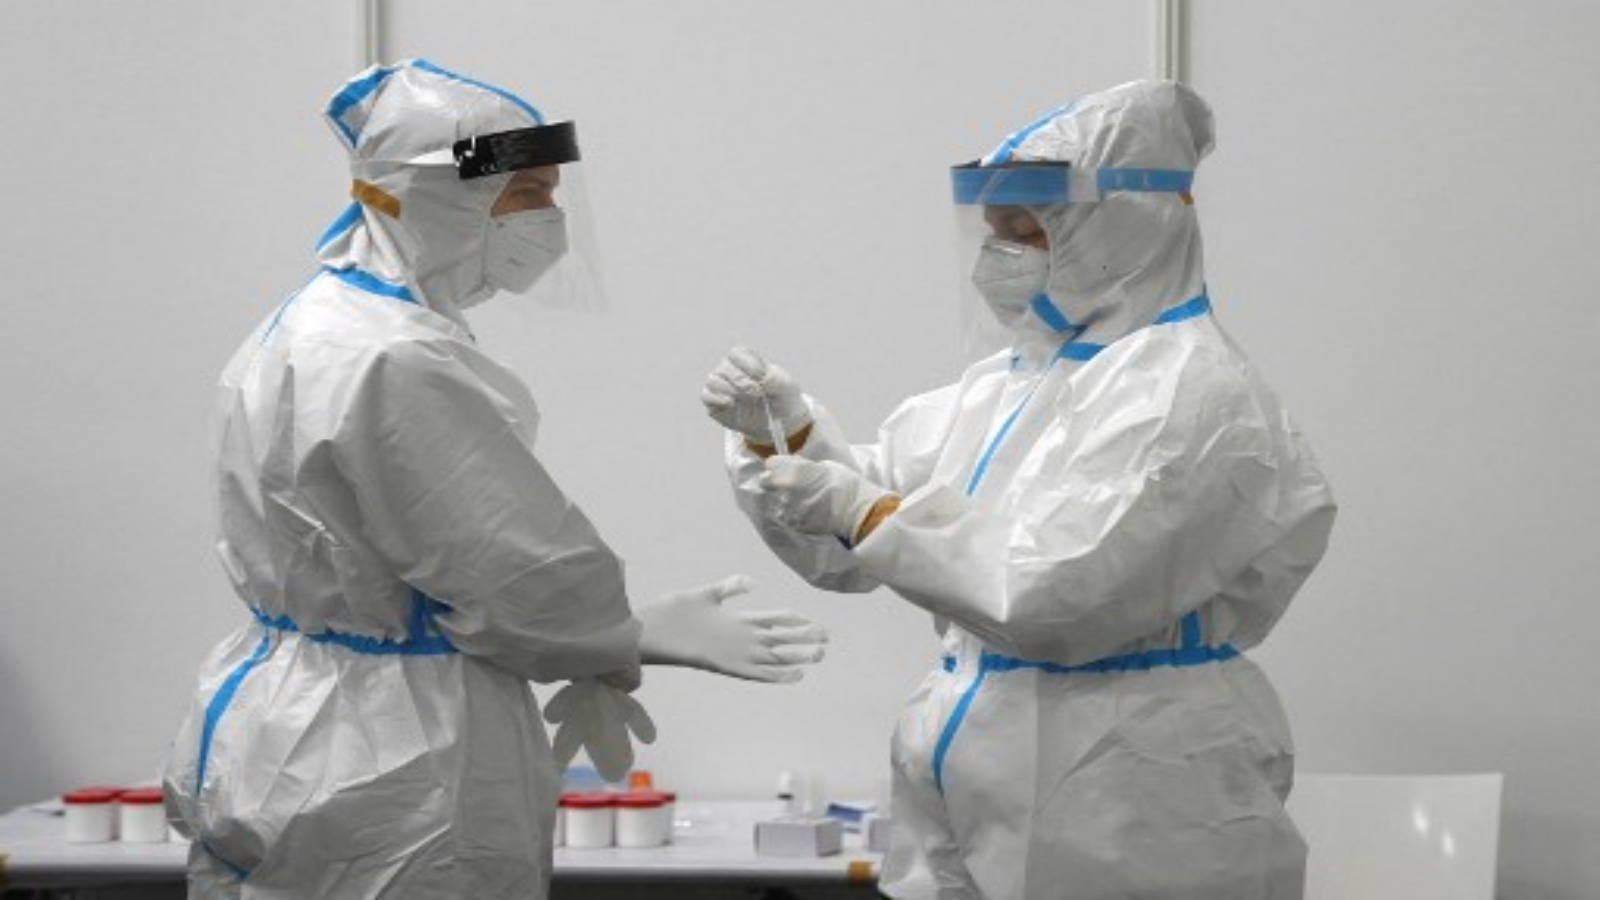 يقوم المساعد الطبي بإعداد اختبارات كورونا السريعة للصحفيين في مركز التطعيم ضد فيروس كورونا COVID-19 في كولونيا ، غرب ألمانيا ، في 8 فبراير 2021.